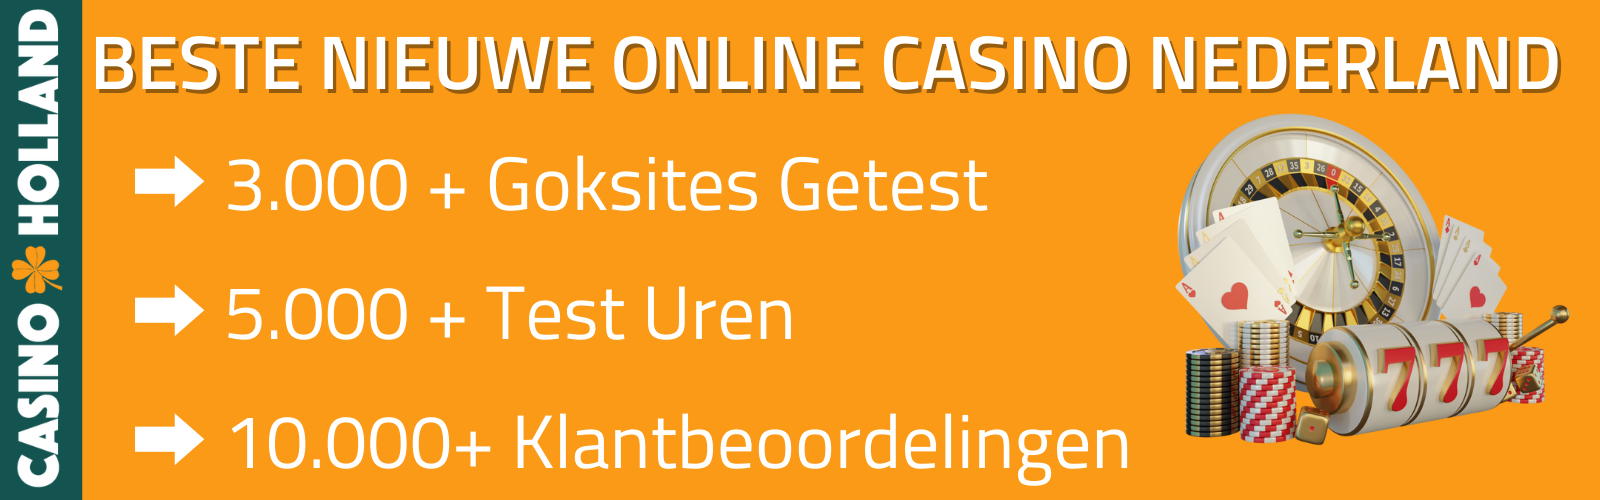 nieuw online casino nederland